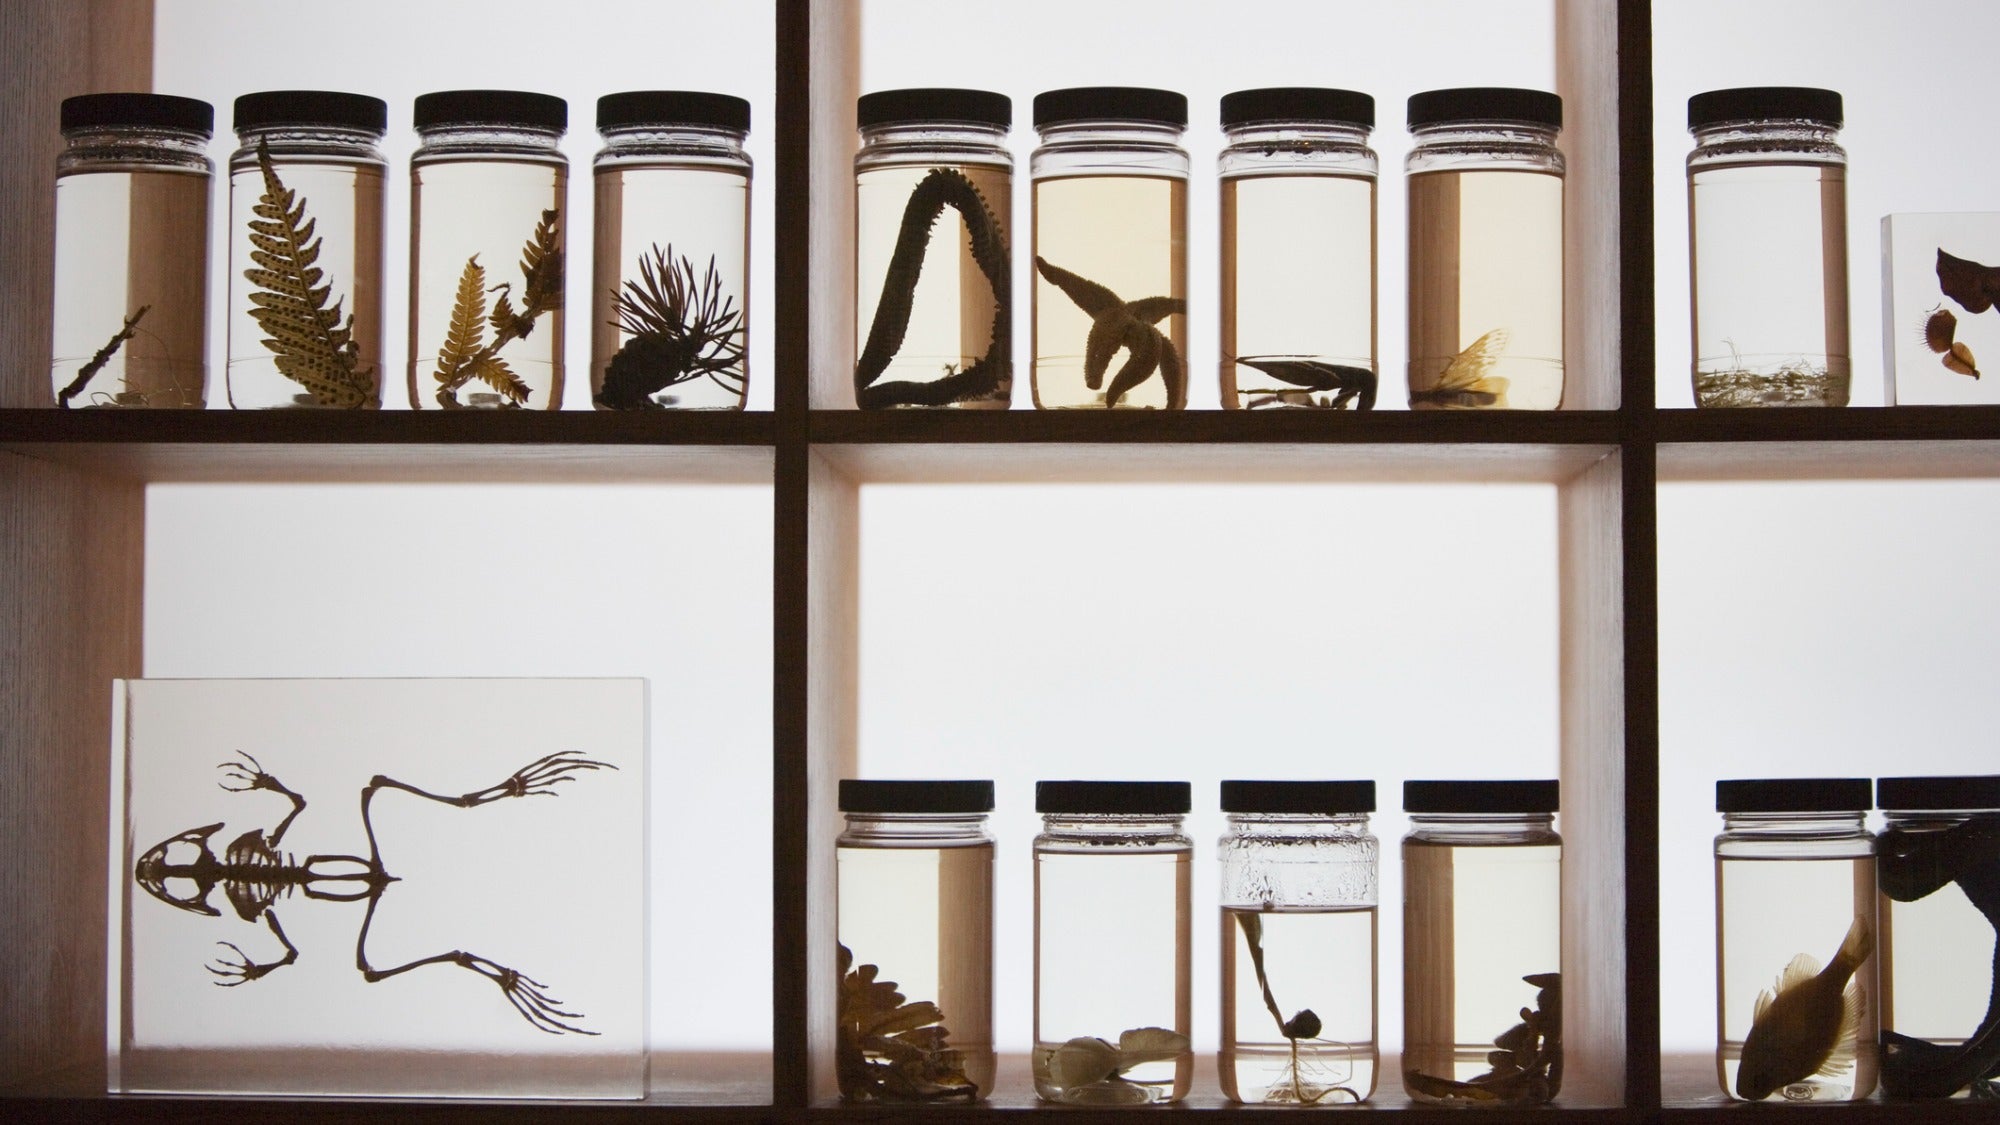 Descuidar un espécimen de museo es arriesgado para la ciencia